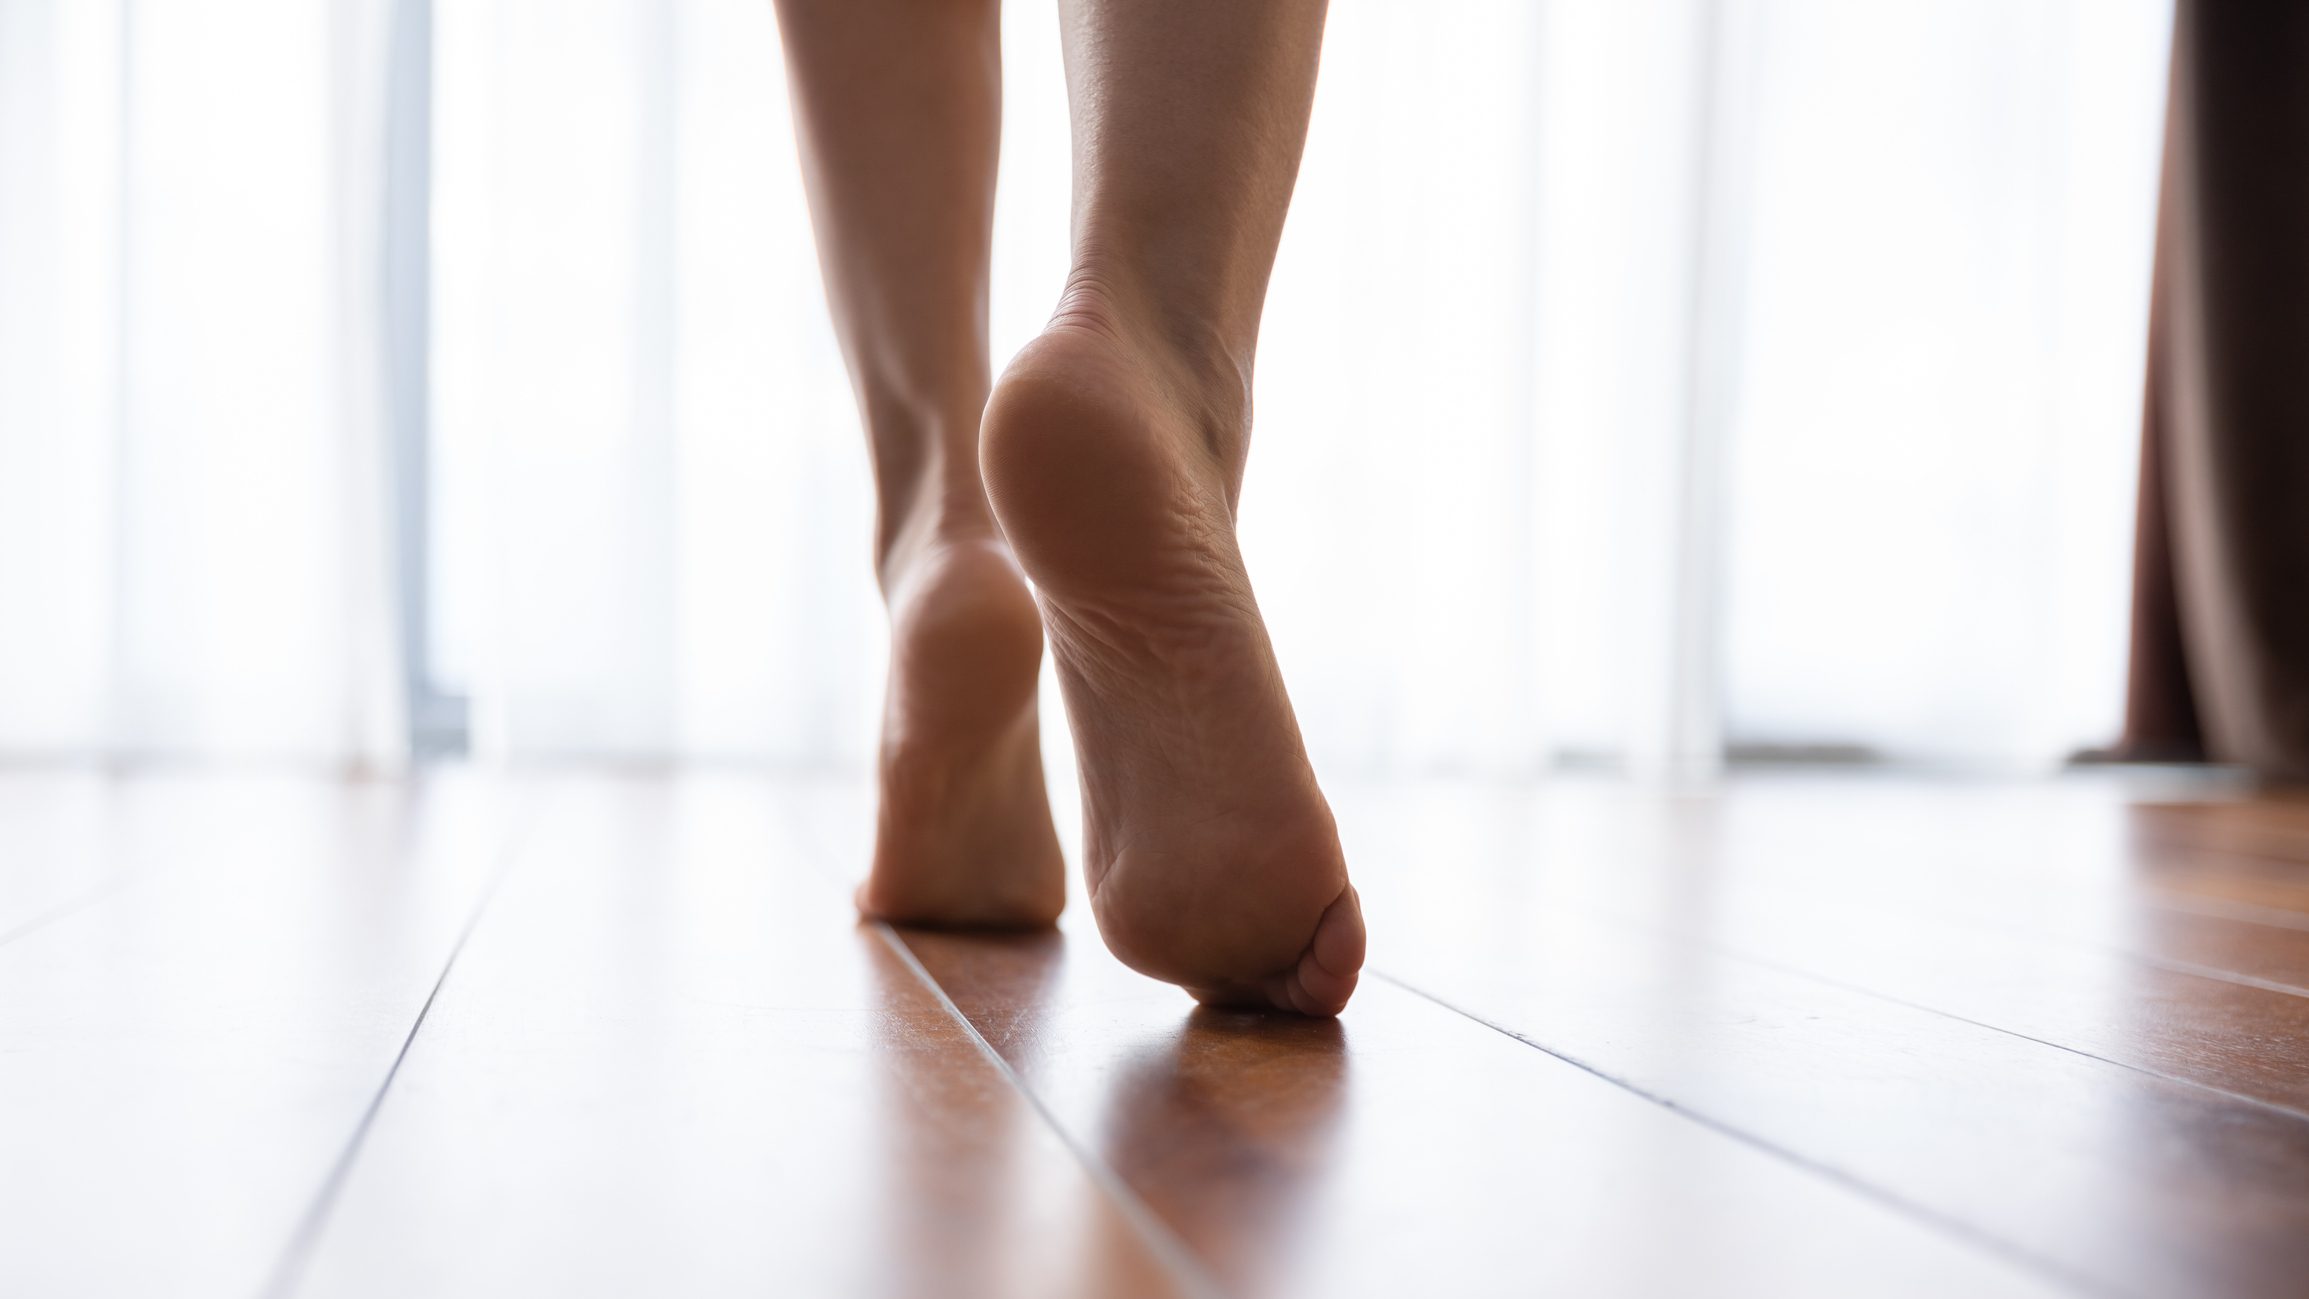 Nahaufnahme von Frauenfüßen beim Gehen zu Hause's feet walking in home